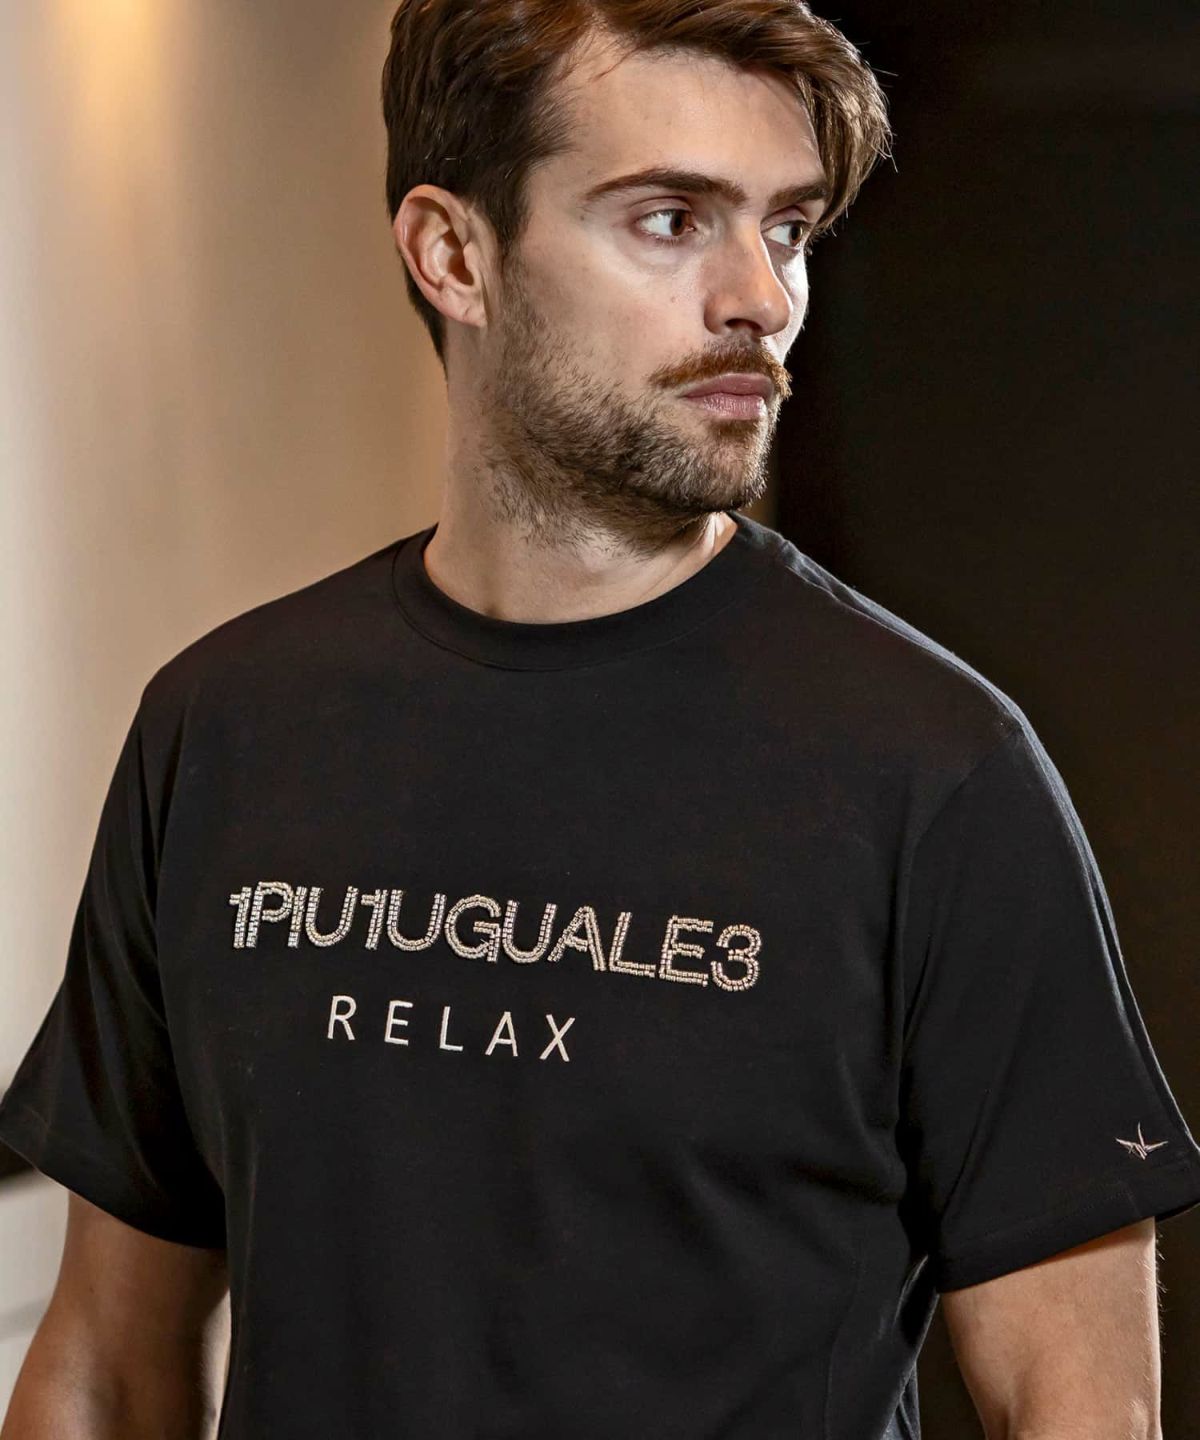 1PIU1UGUALE3 RELAX(ウノピゥウノウグァーレトレ リラックス)ビーズロゴ半袖Tシャツ